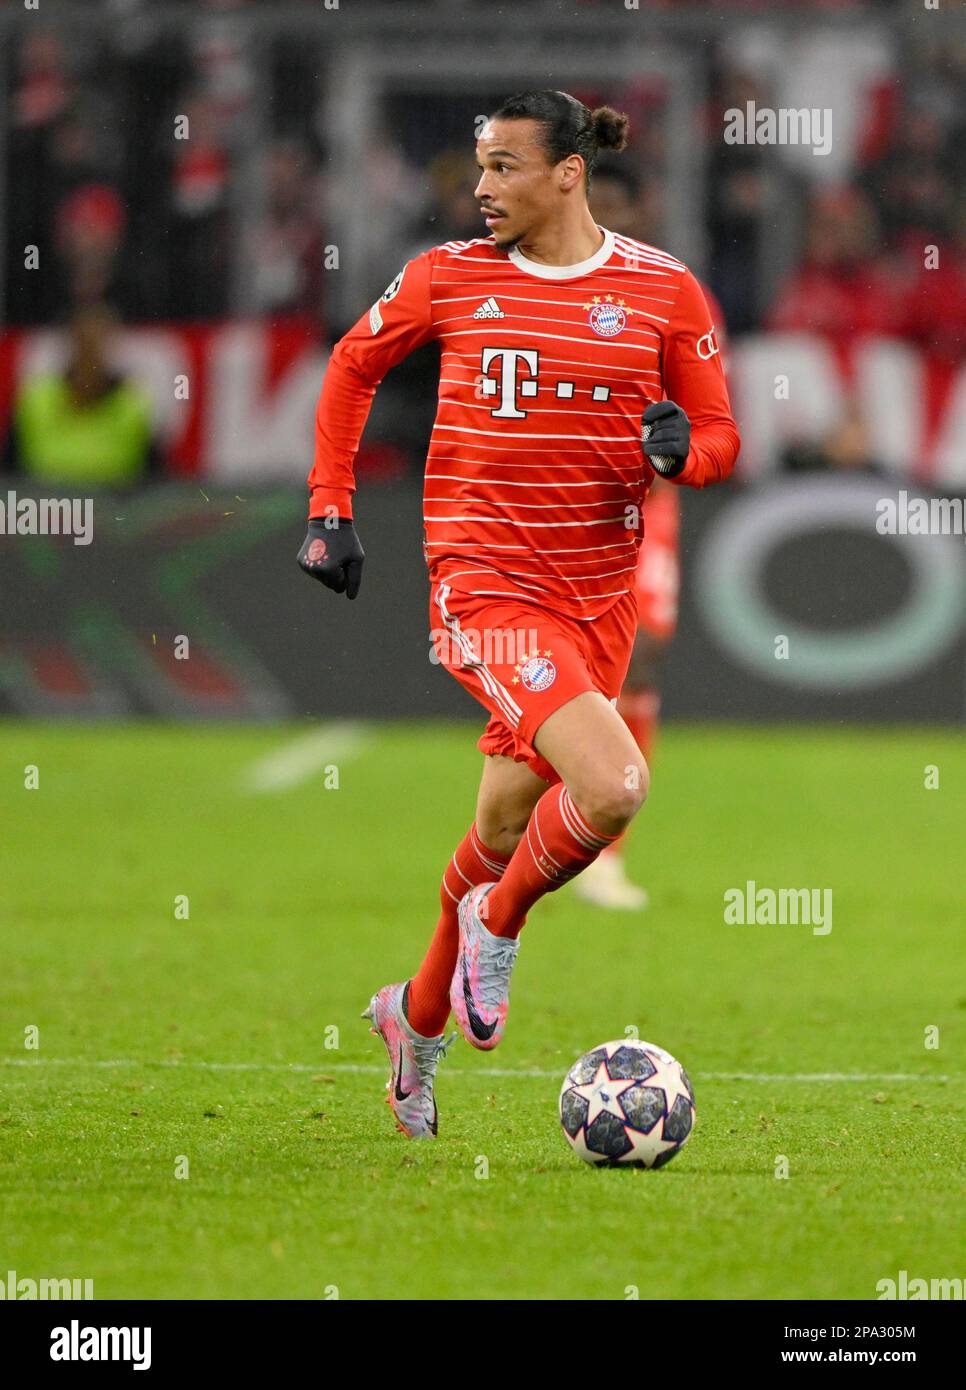 Leroy Sane FC Bayern Munich FCB on the ball, CL, Champions League match,  Allianz Arena, Munich, Bayern, Germany Stock Photo - Alamy